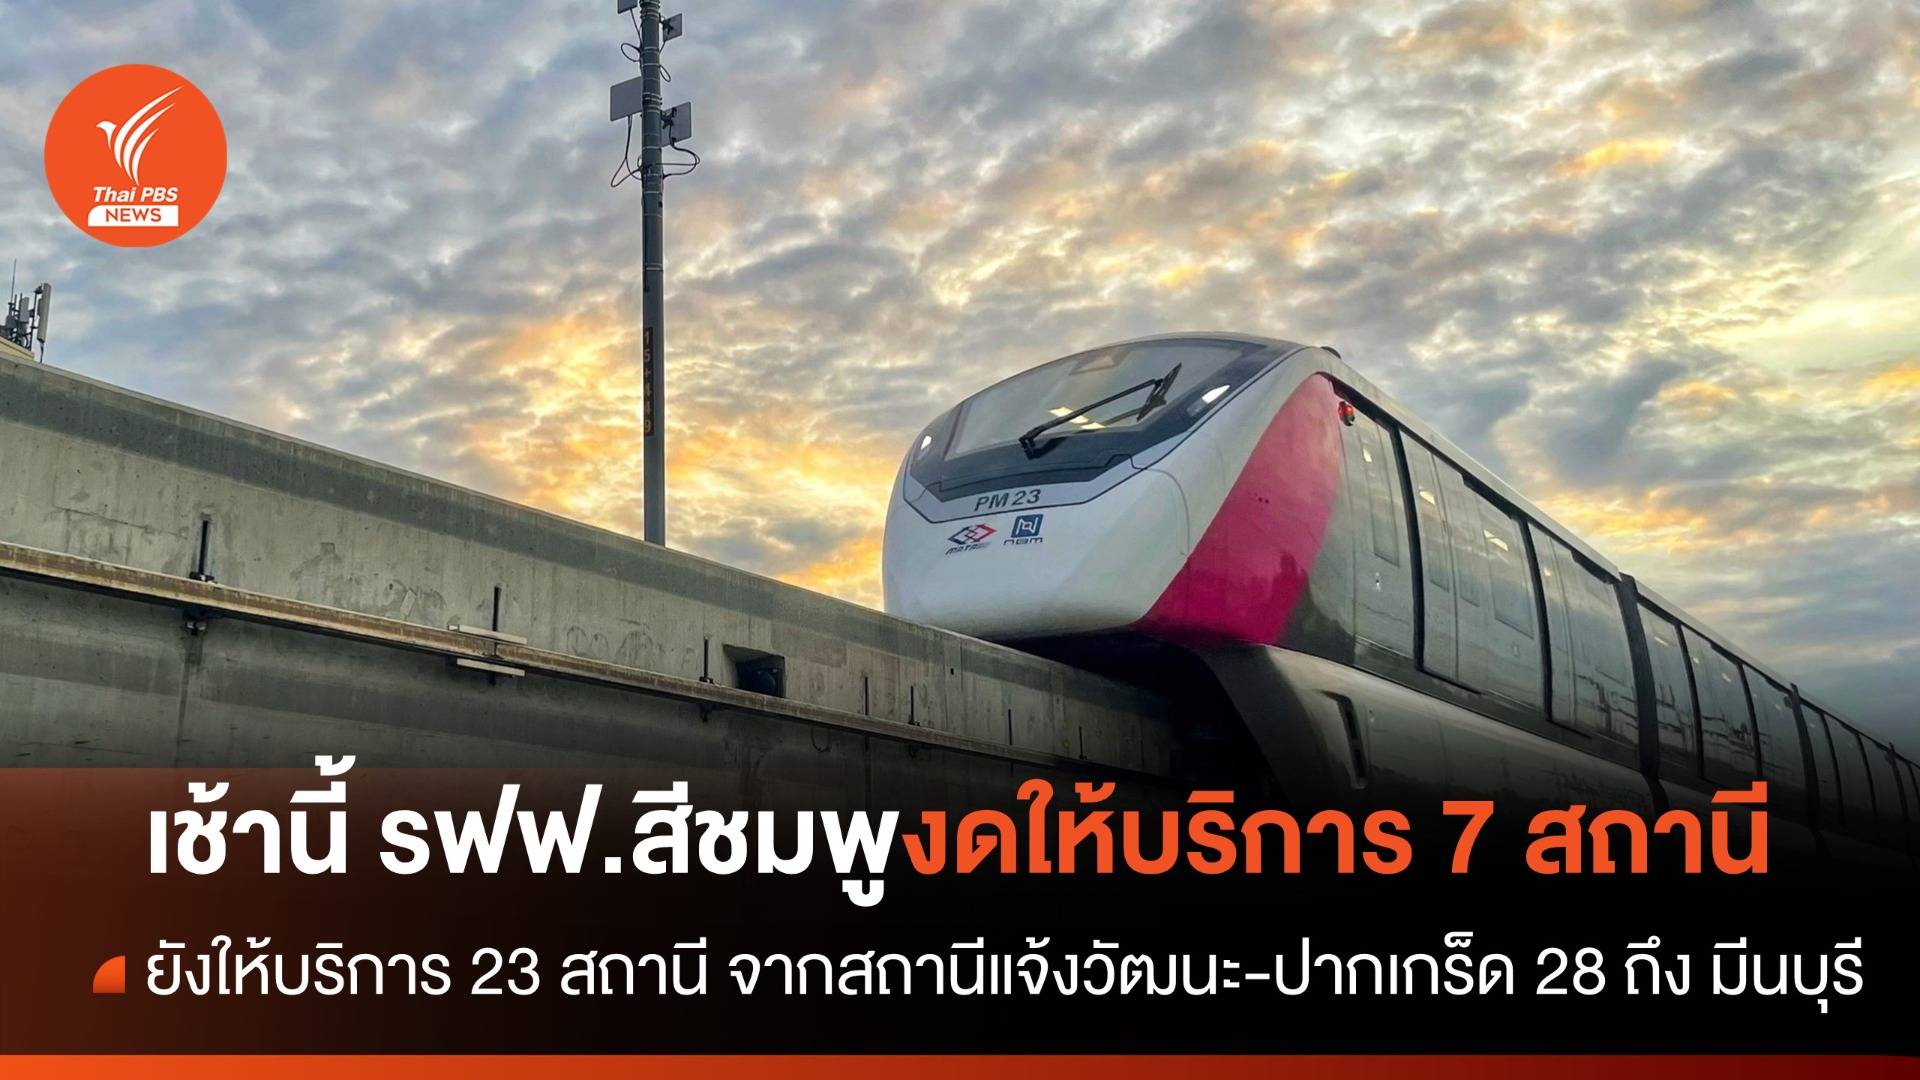 วันนี้ รถไฟฟ้าสายสีชมพูปิดให้บริการ สถานีศูนย์ราชการนนทบุรี - เลี่ยงเมืองปากเกร็ด